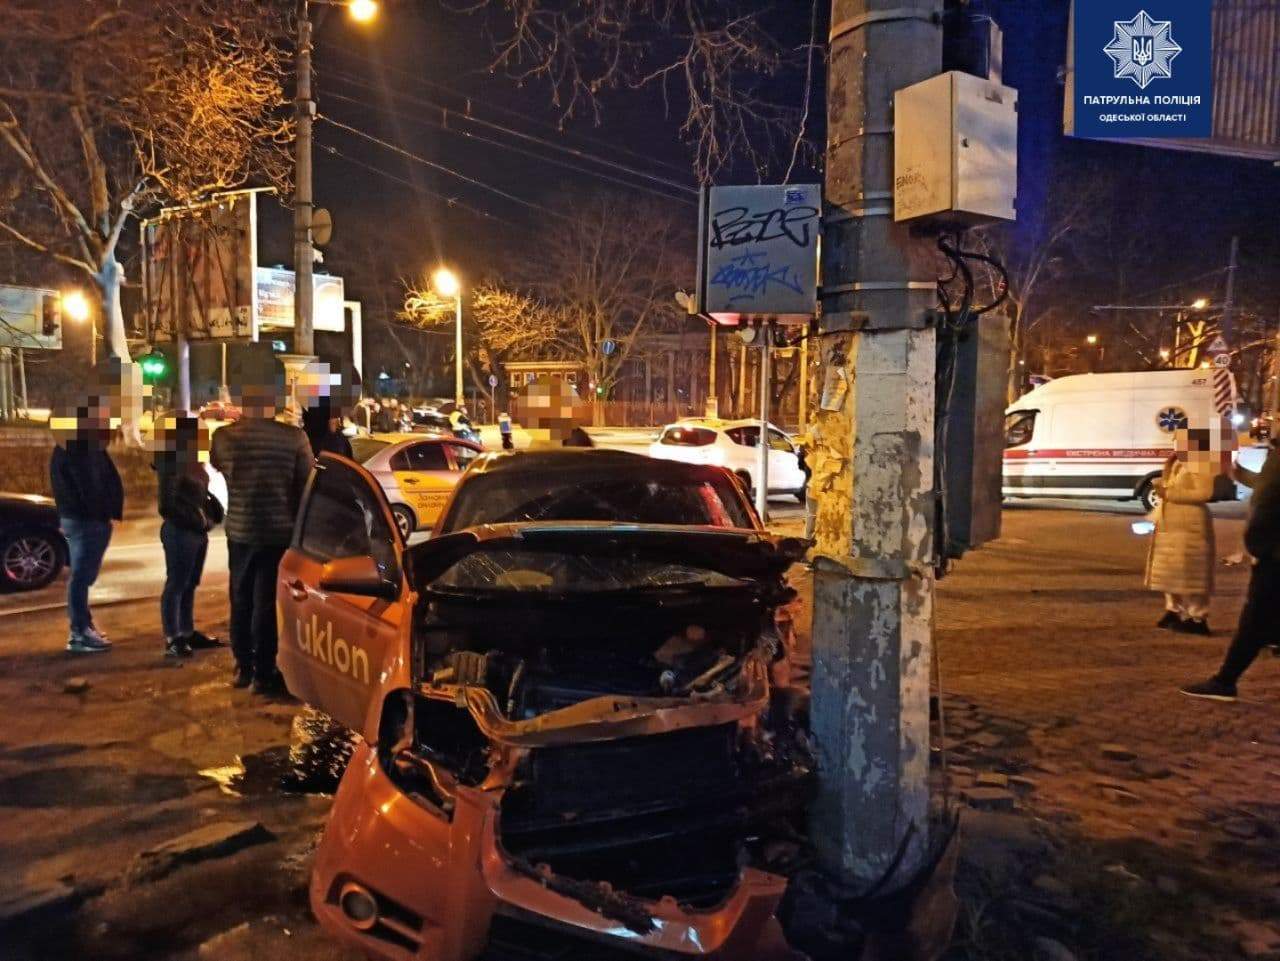 ДТП Одеса таксі Uklon аварія